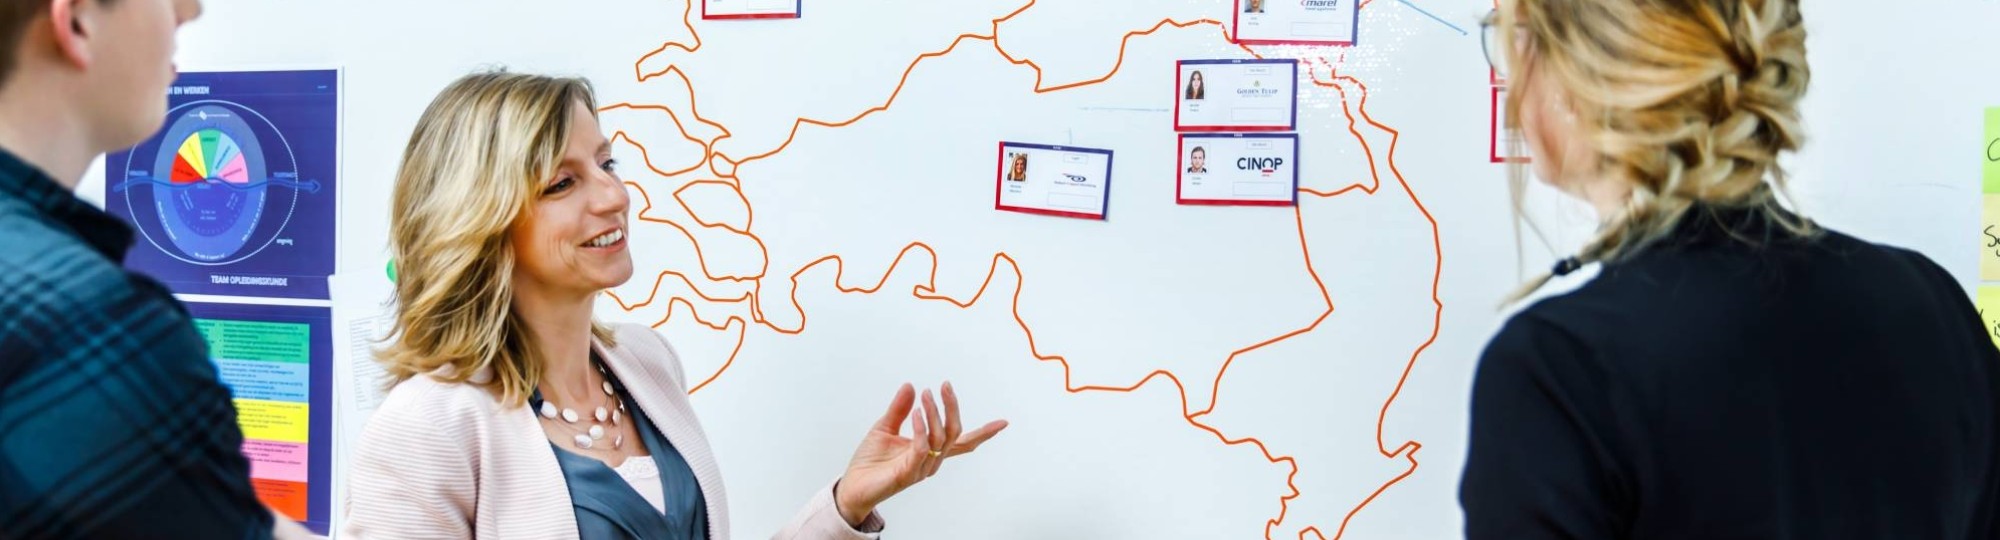 docent legt uit voor kaart nederland